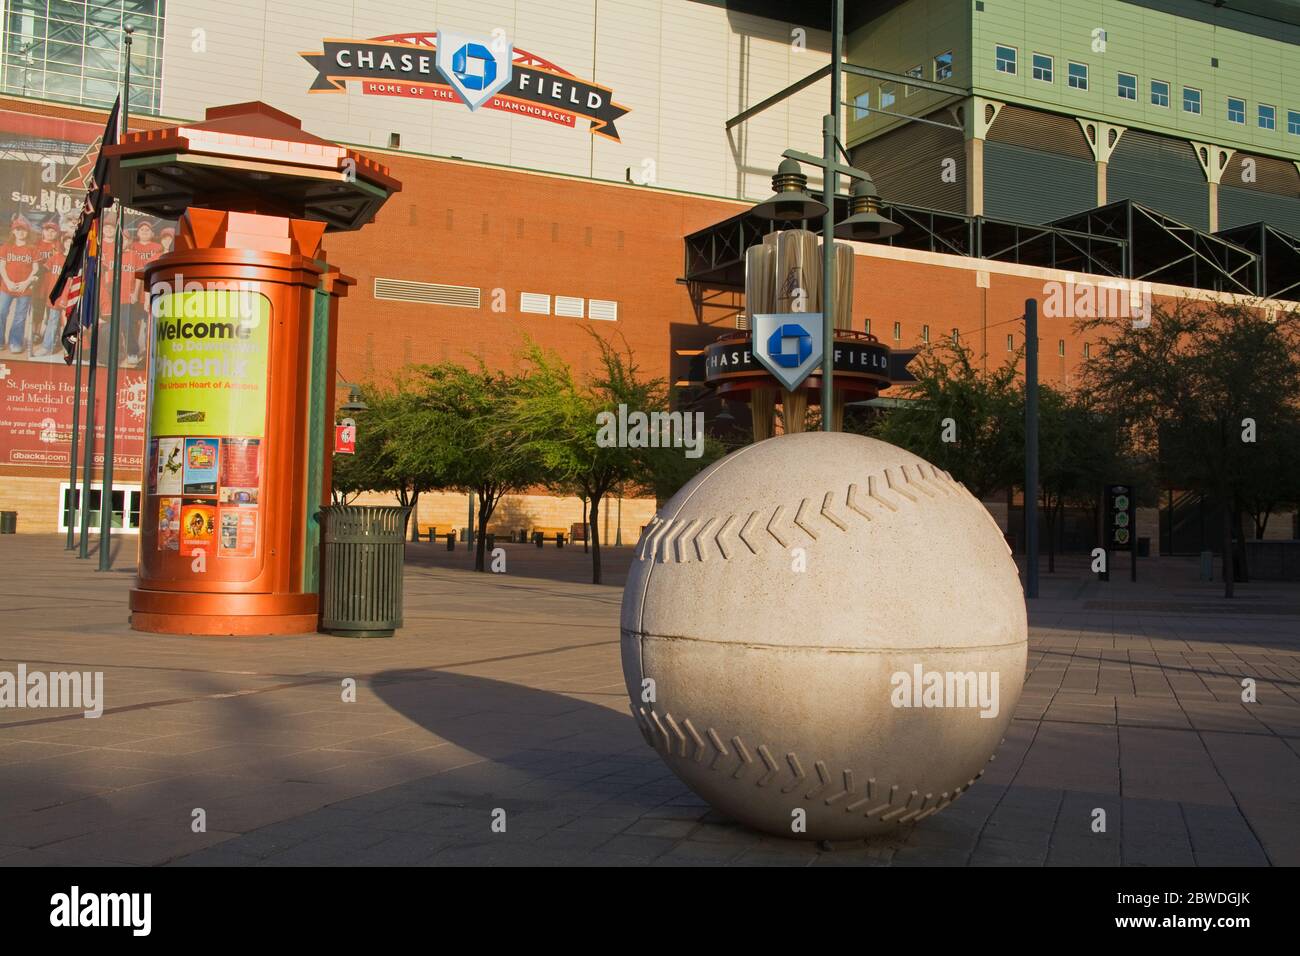 Chase Field Baseball Park, Phoenix, Arizona, USA Stock Photo Alamy